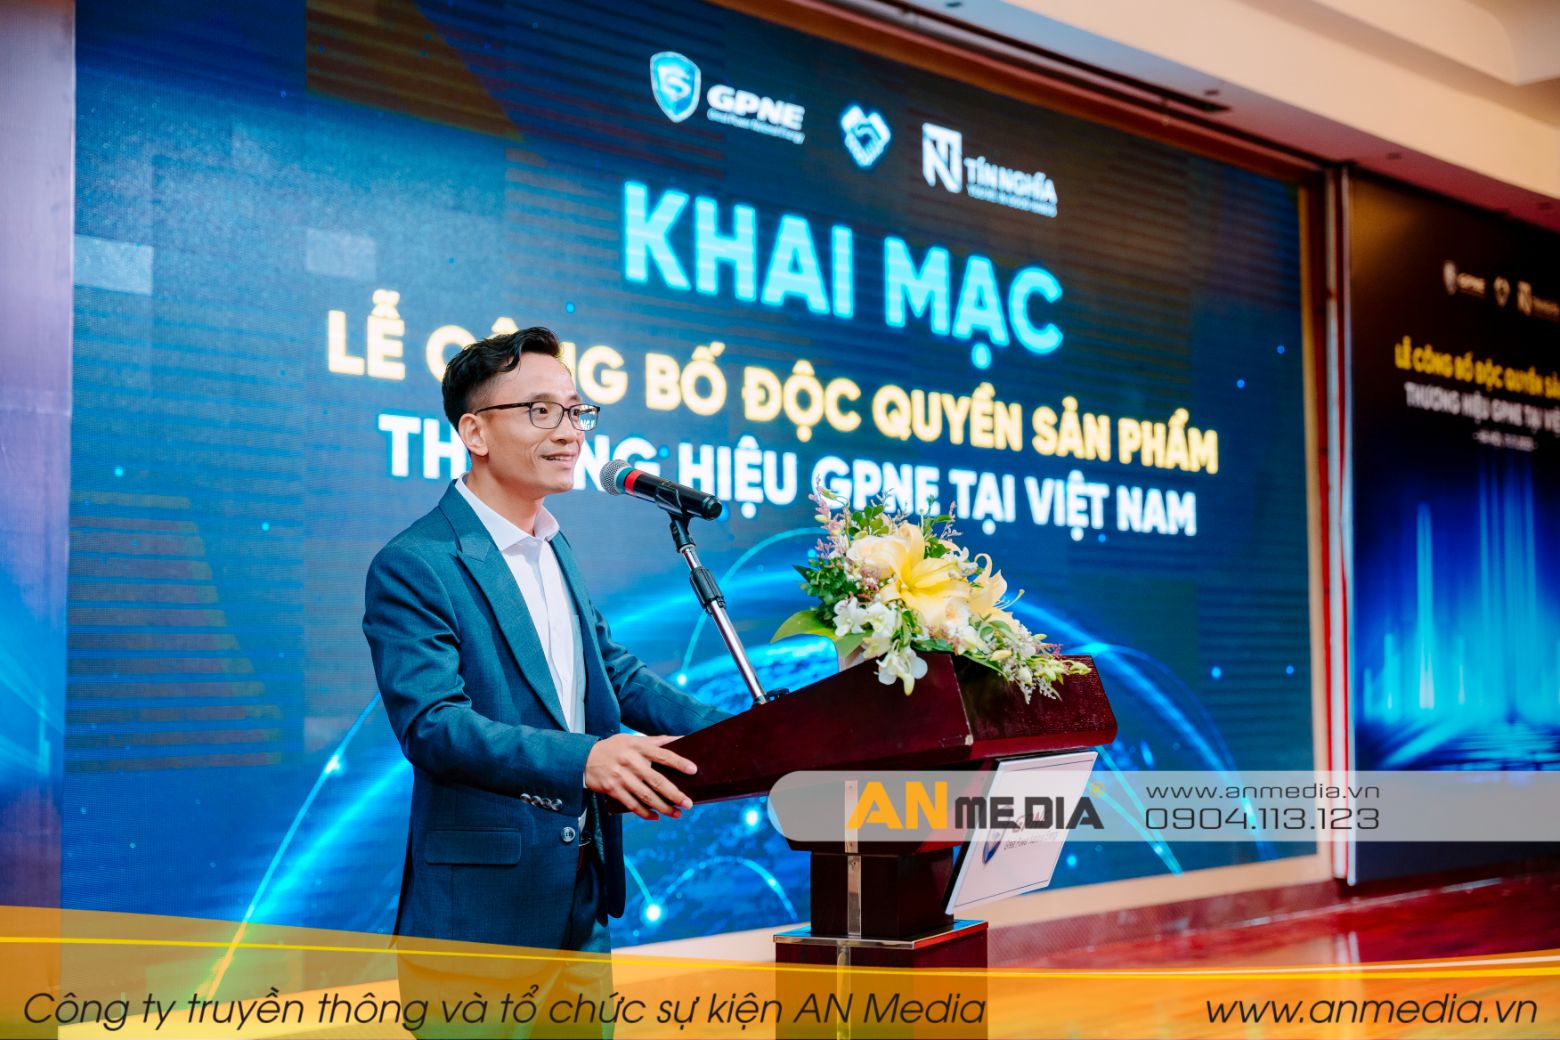 Lễ công bố độc quyền sản phẩm thương hiệu GPNE tại Việt Nam